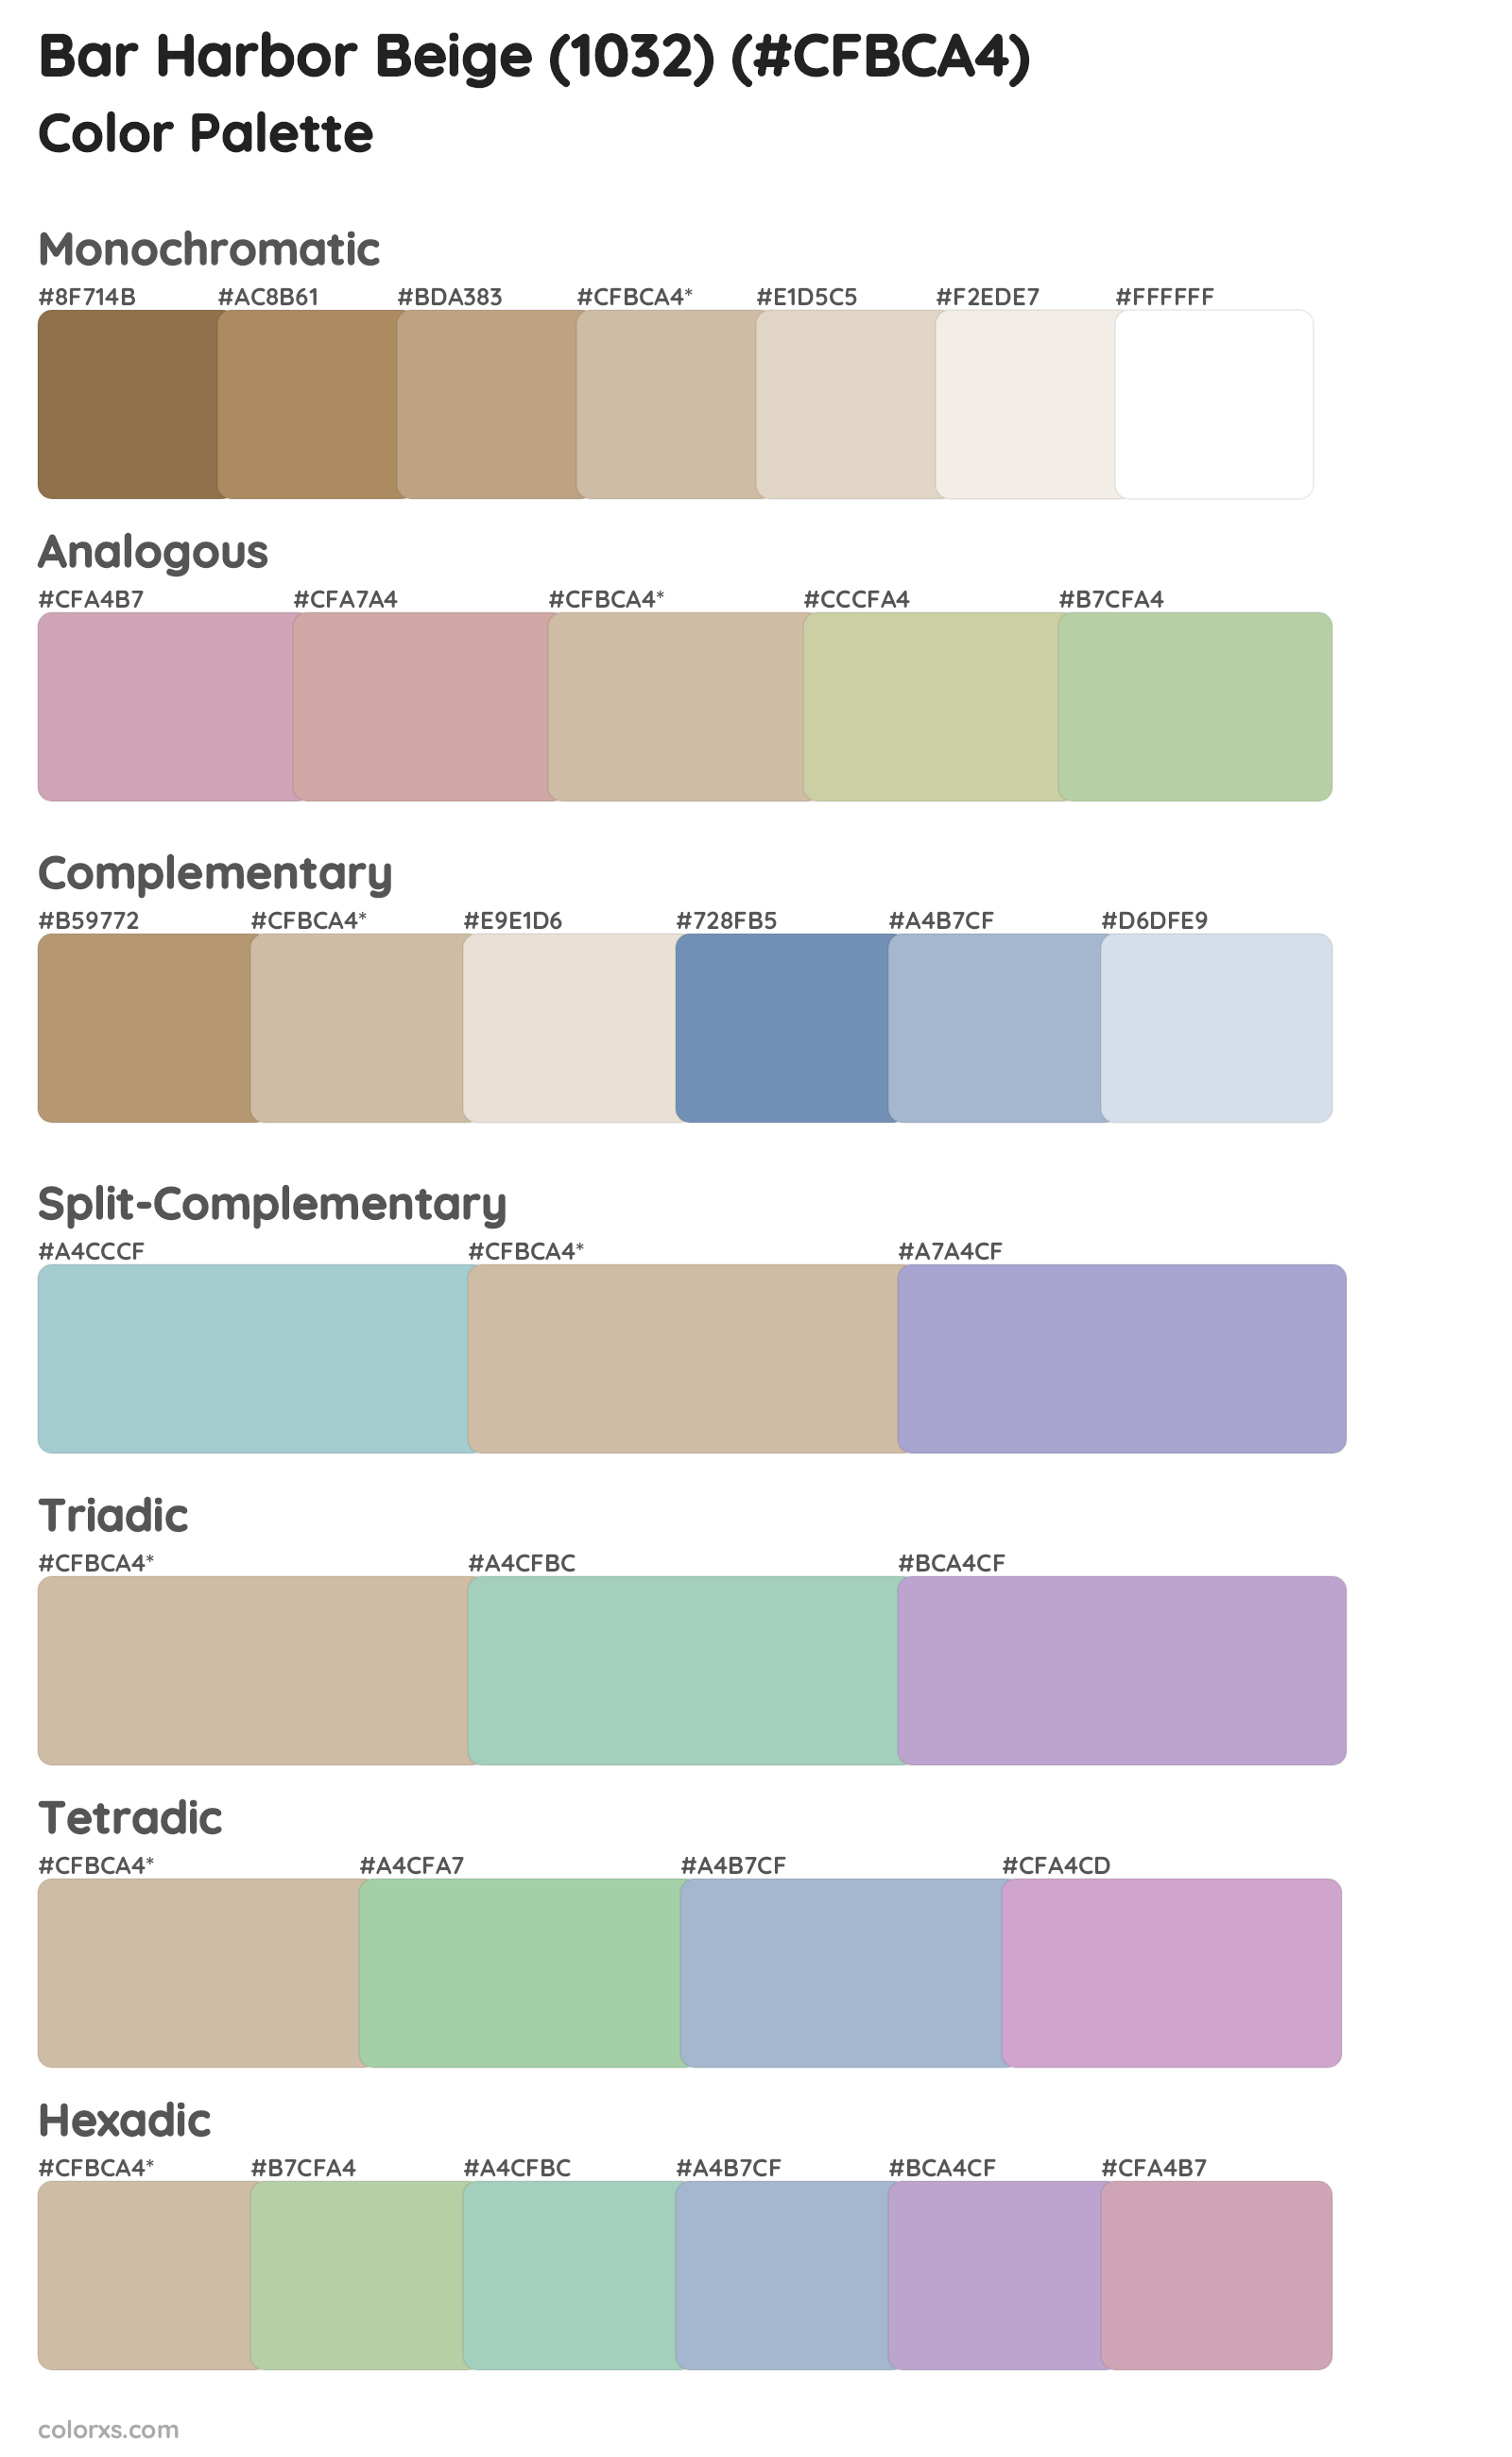 Bar Harbor Beige (1032) Color Scheme Palettes